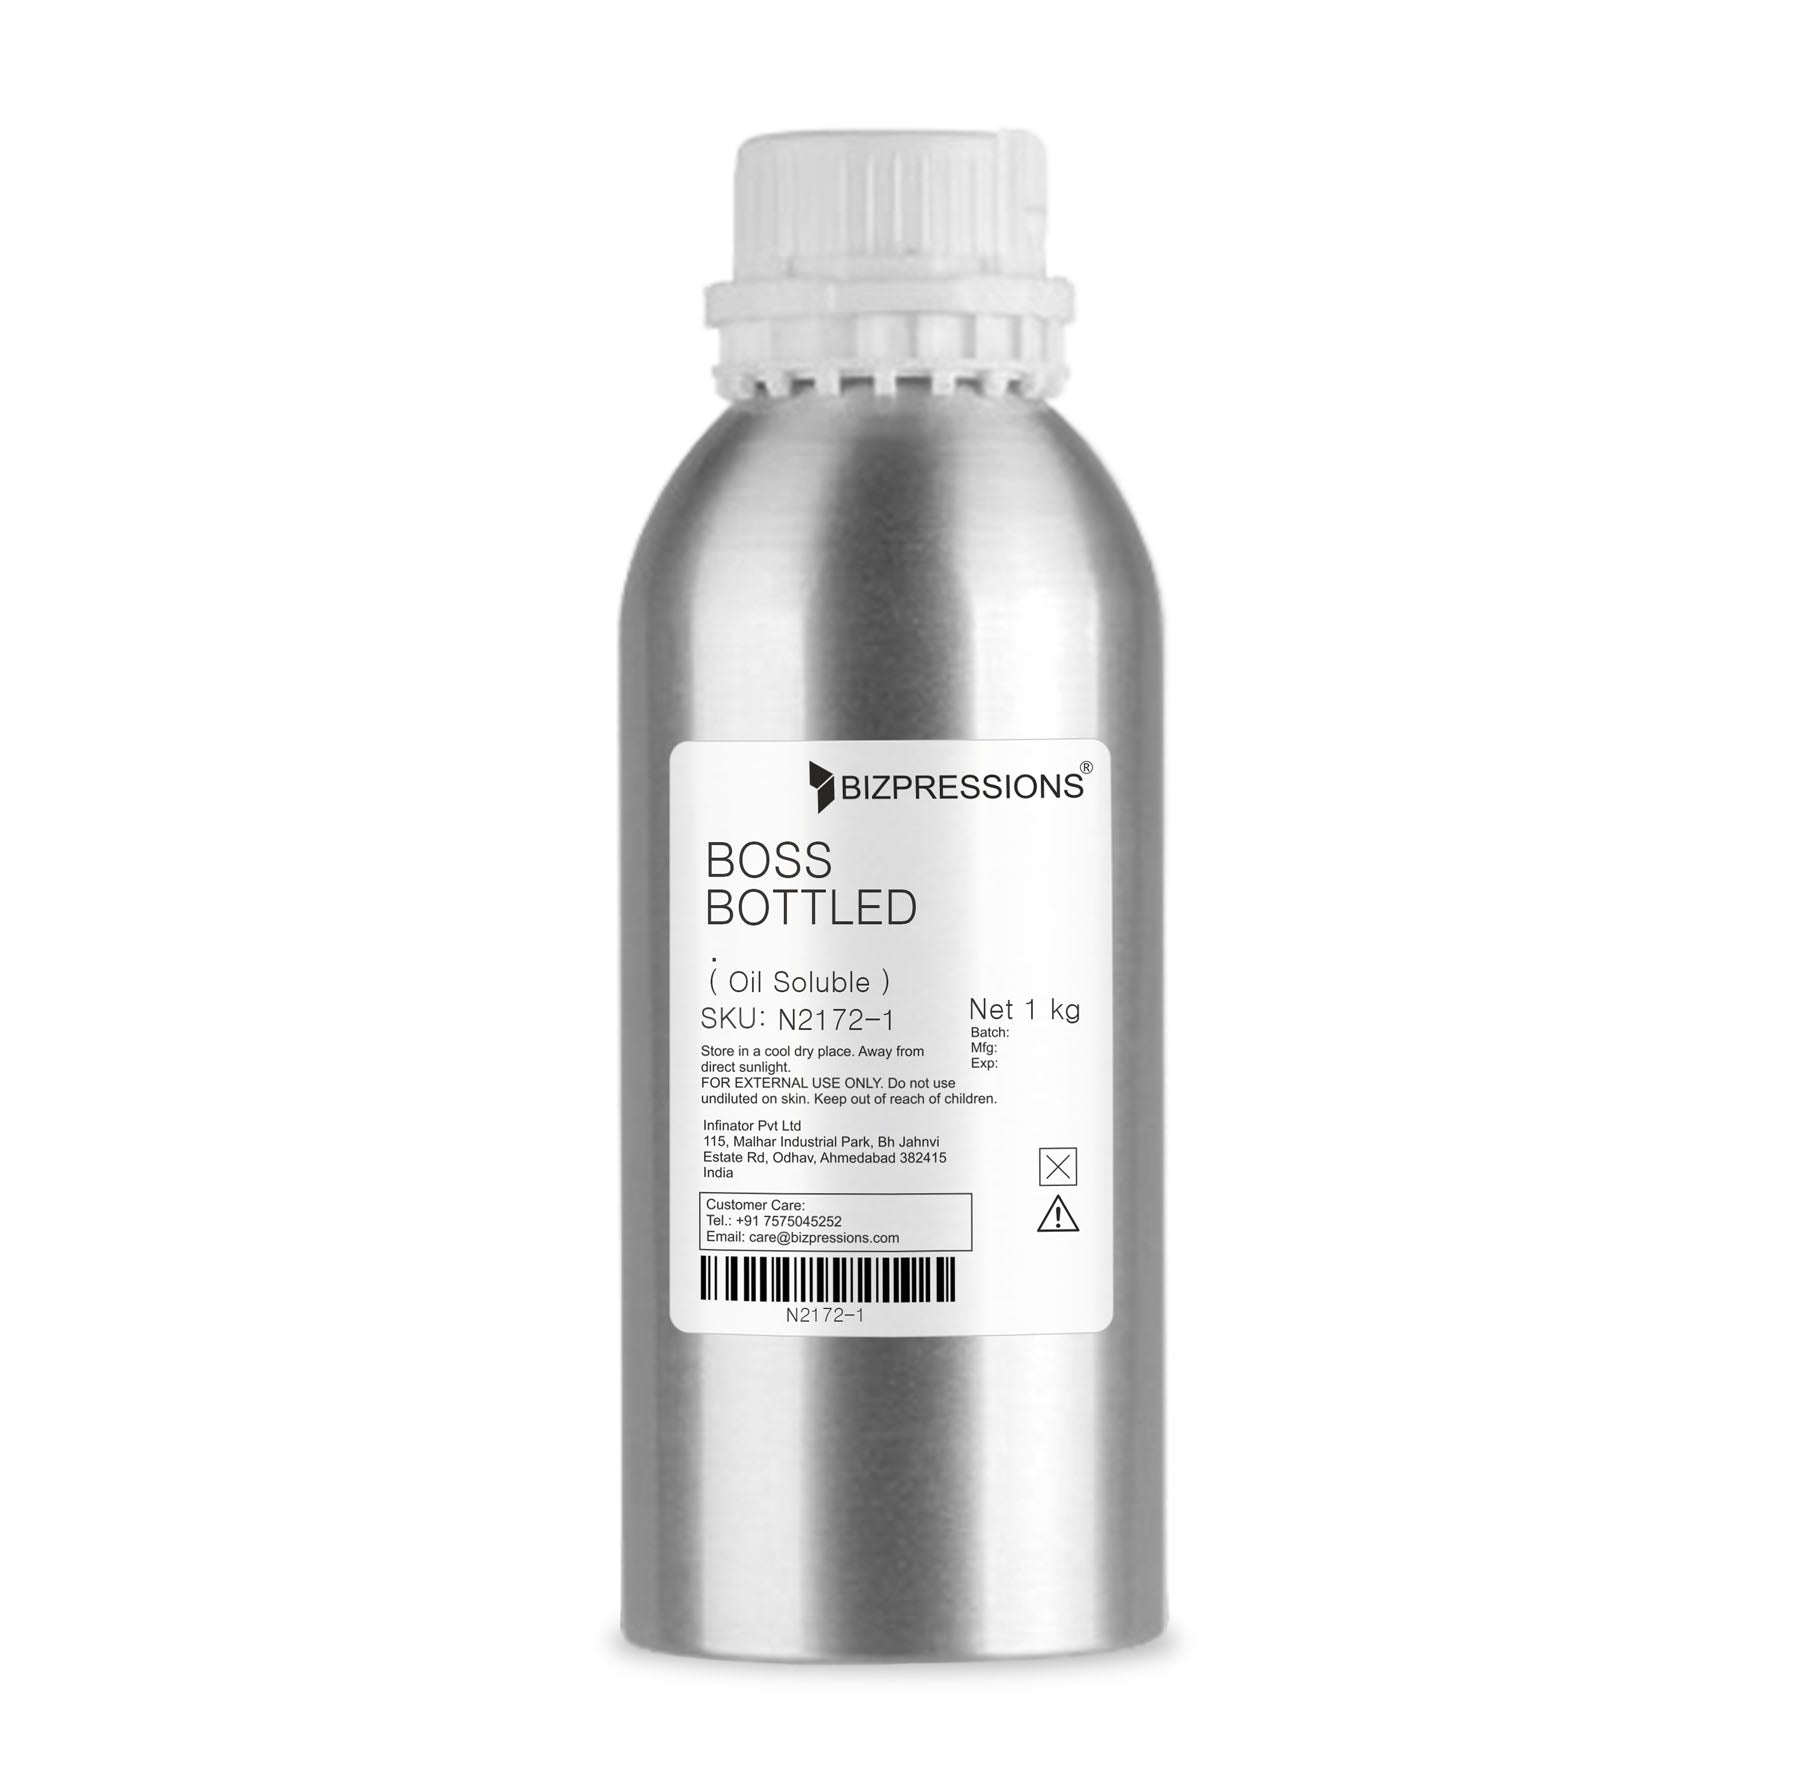 BOSS BOTTLED - Fragrance ( Oil Soluble ) - 1 kg